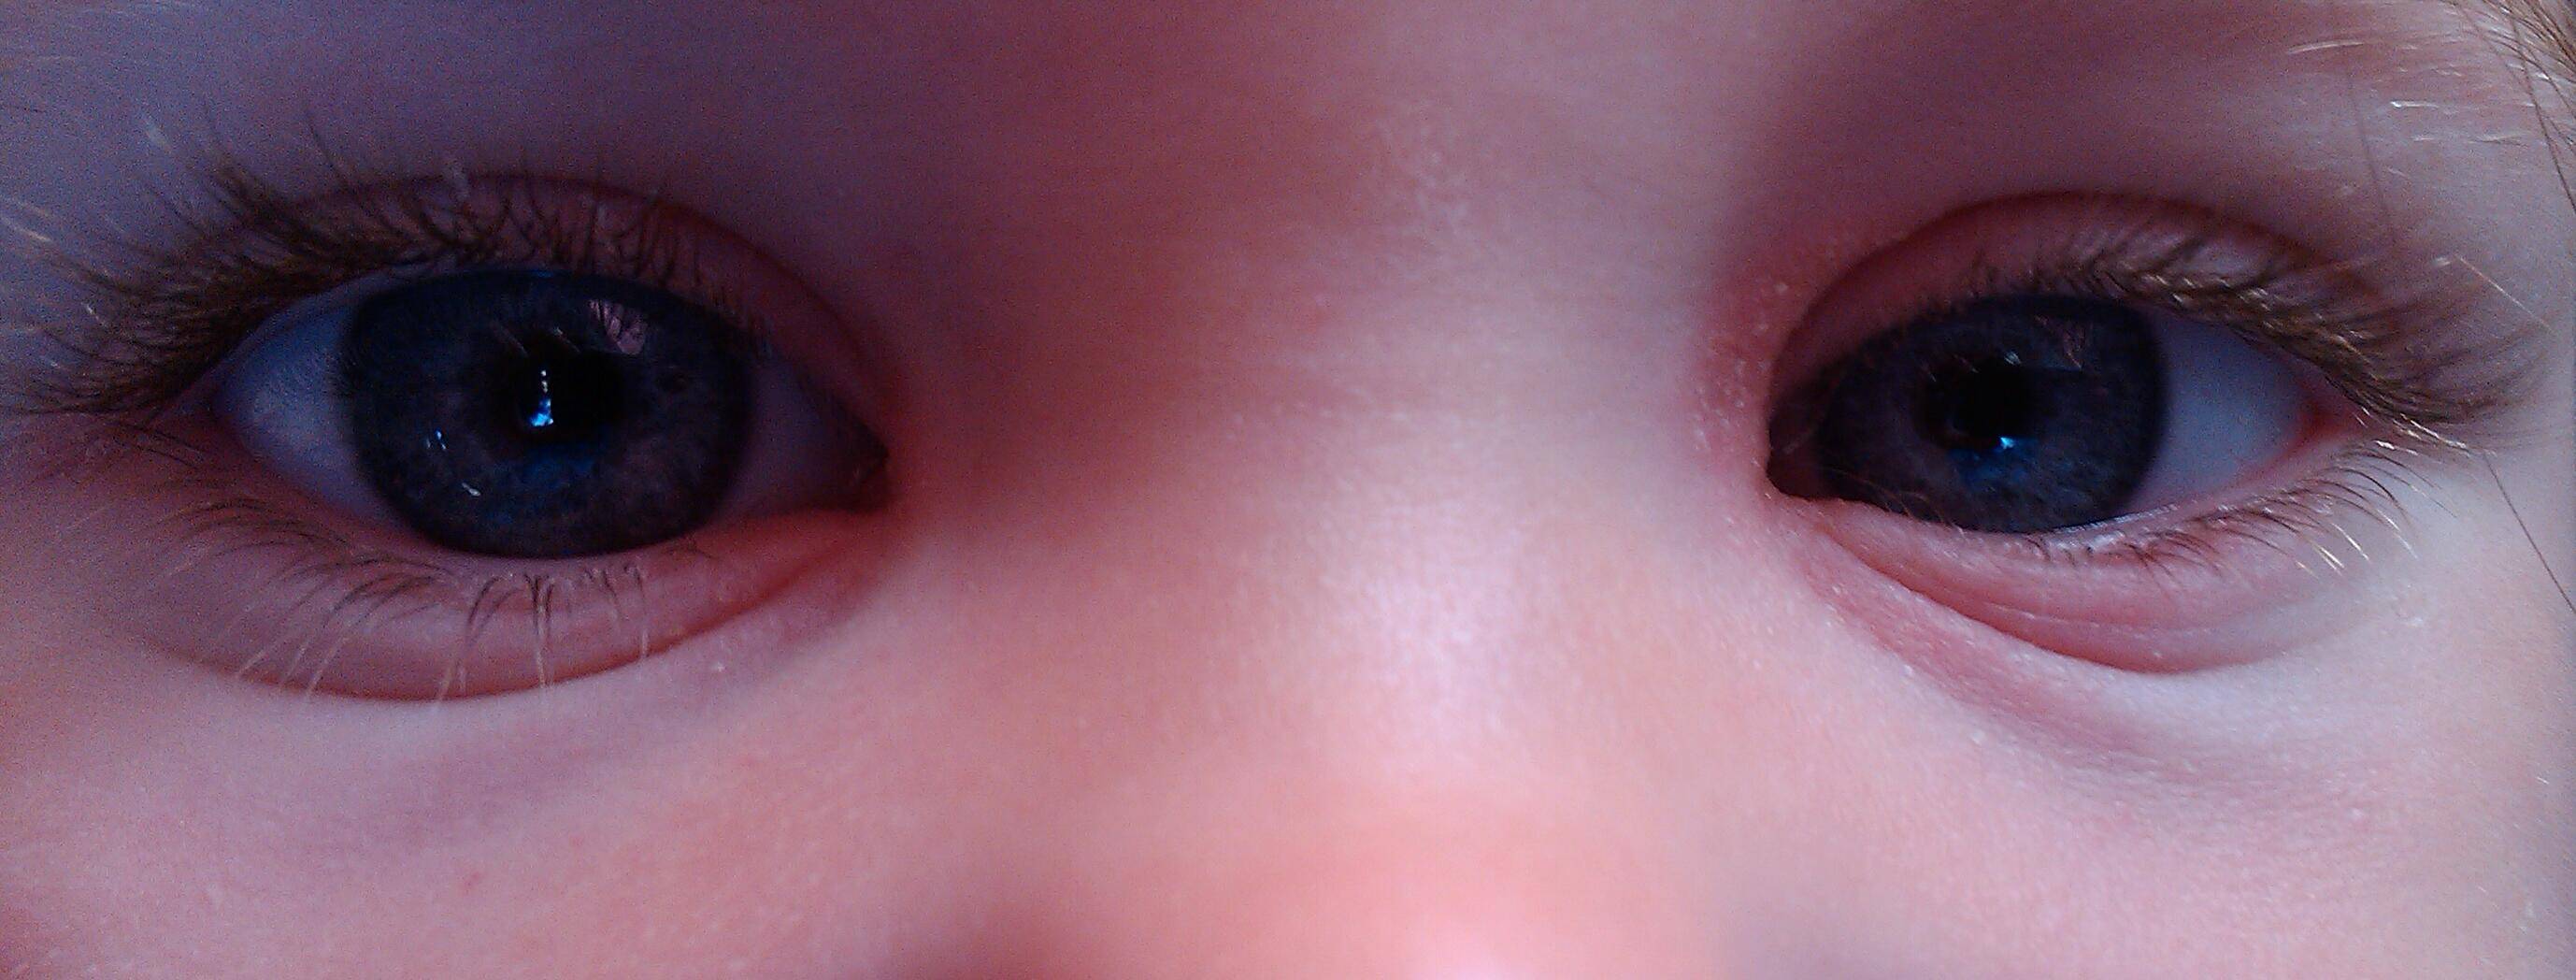 Болит уголок глаза ближе к носу, возле переносицы (внутренний или внешний): симптомы, причины, лечение боли, профилактика